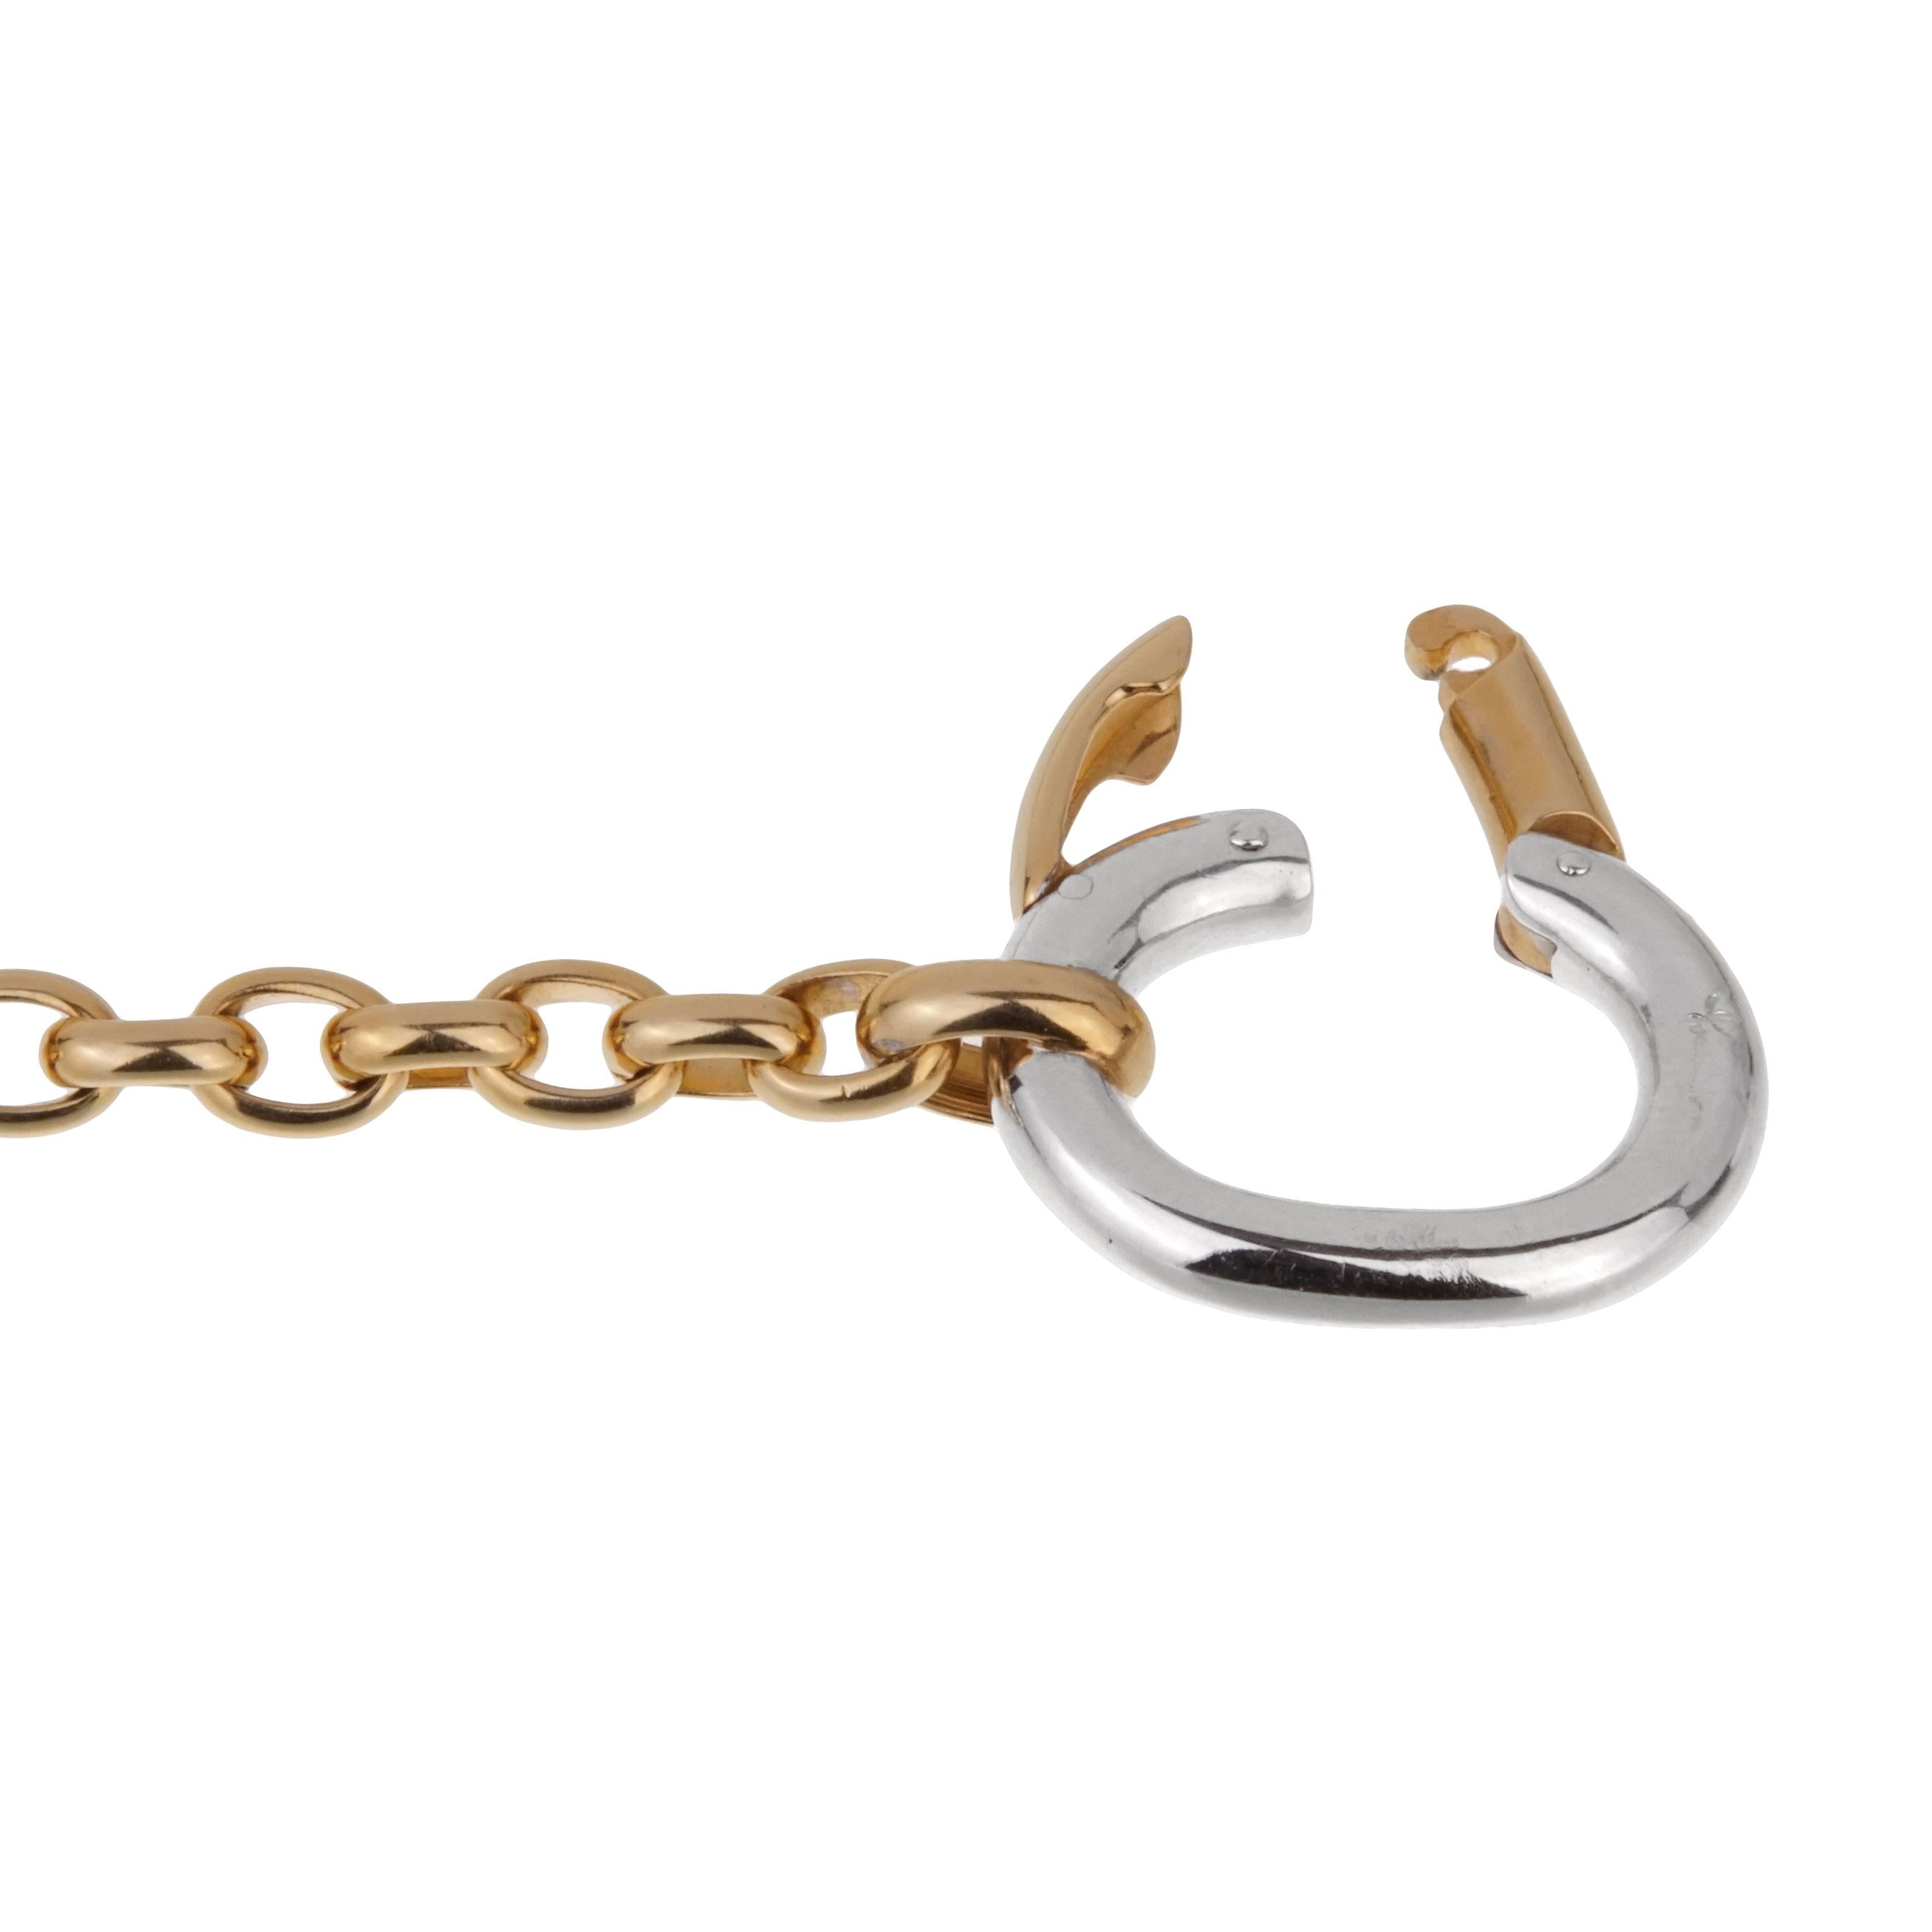 Schicke Pomellato-Kettengliederkette mit gelbgoldenen Kettengliedern und übergroßem Weißgoldverschluss aus 18 Karat Gold. Die Halskette ist 20